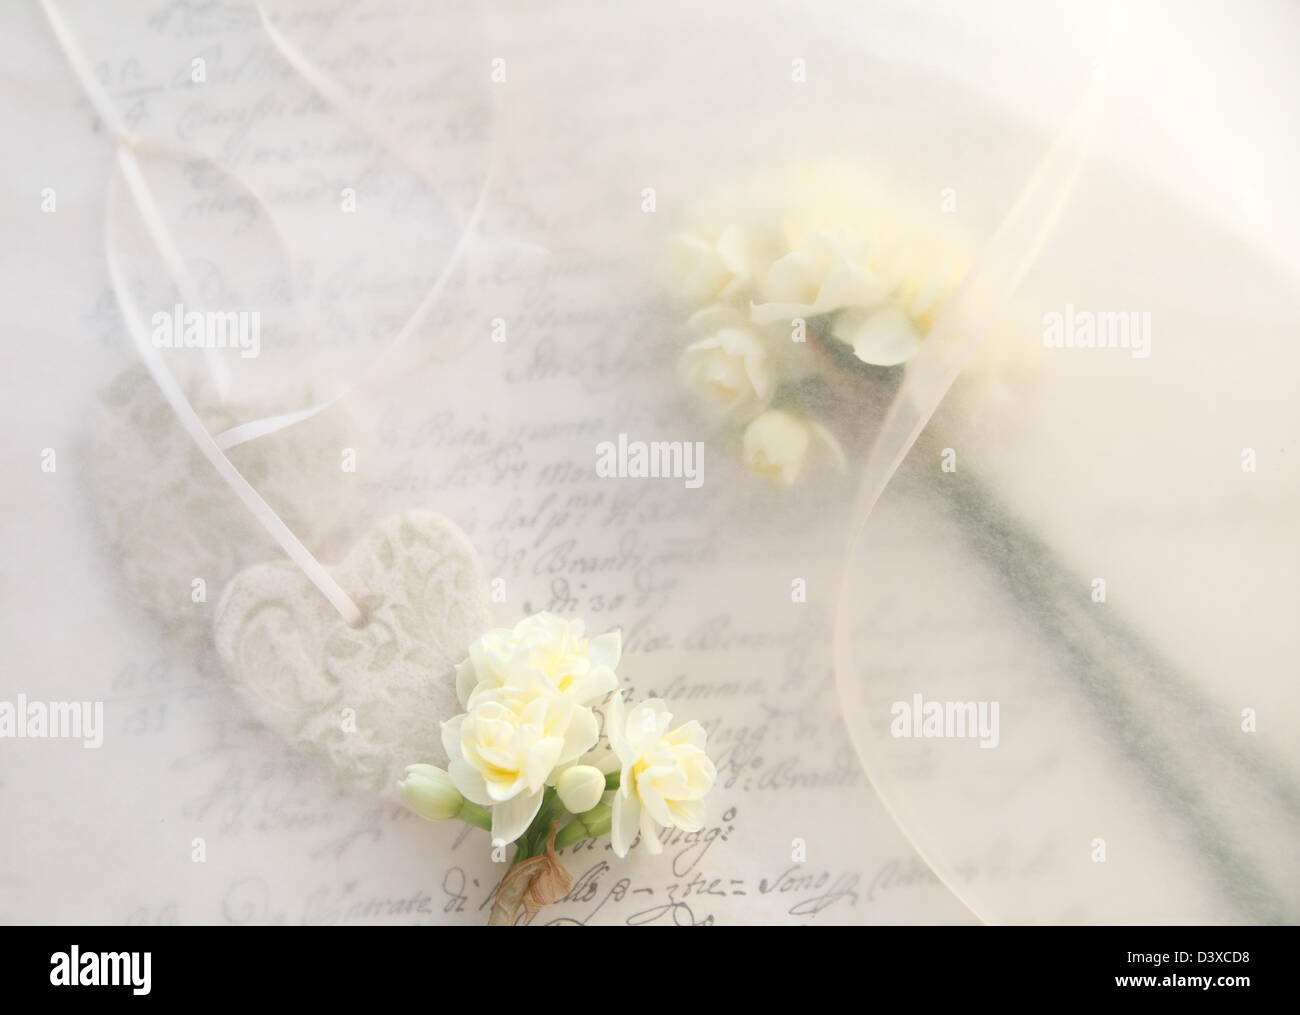 Hintergrund der frischen Narzisse Blumen mit Schleife und Herz auf alte Schrift Stockfoto